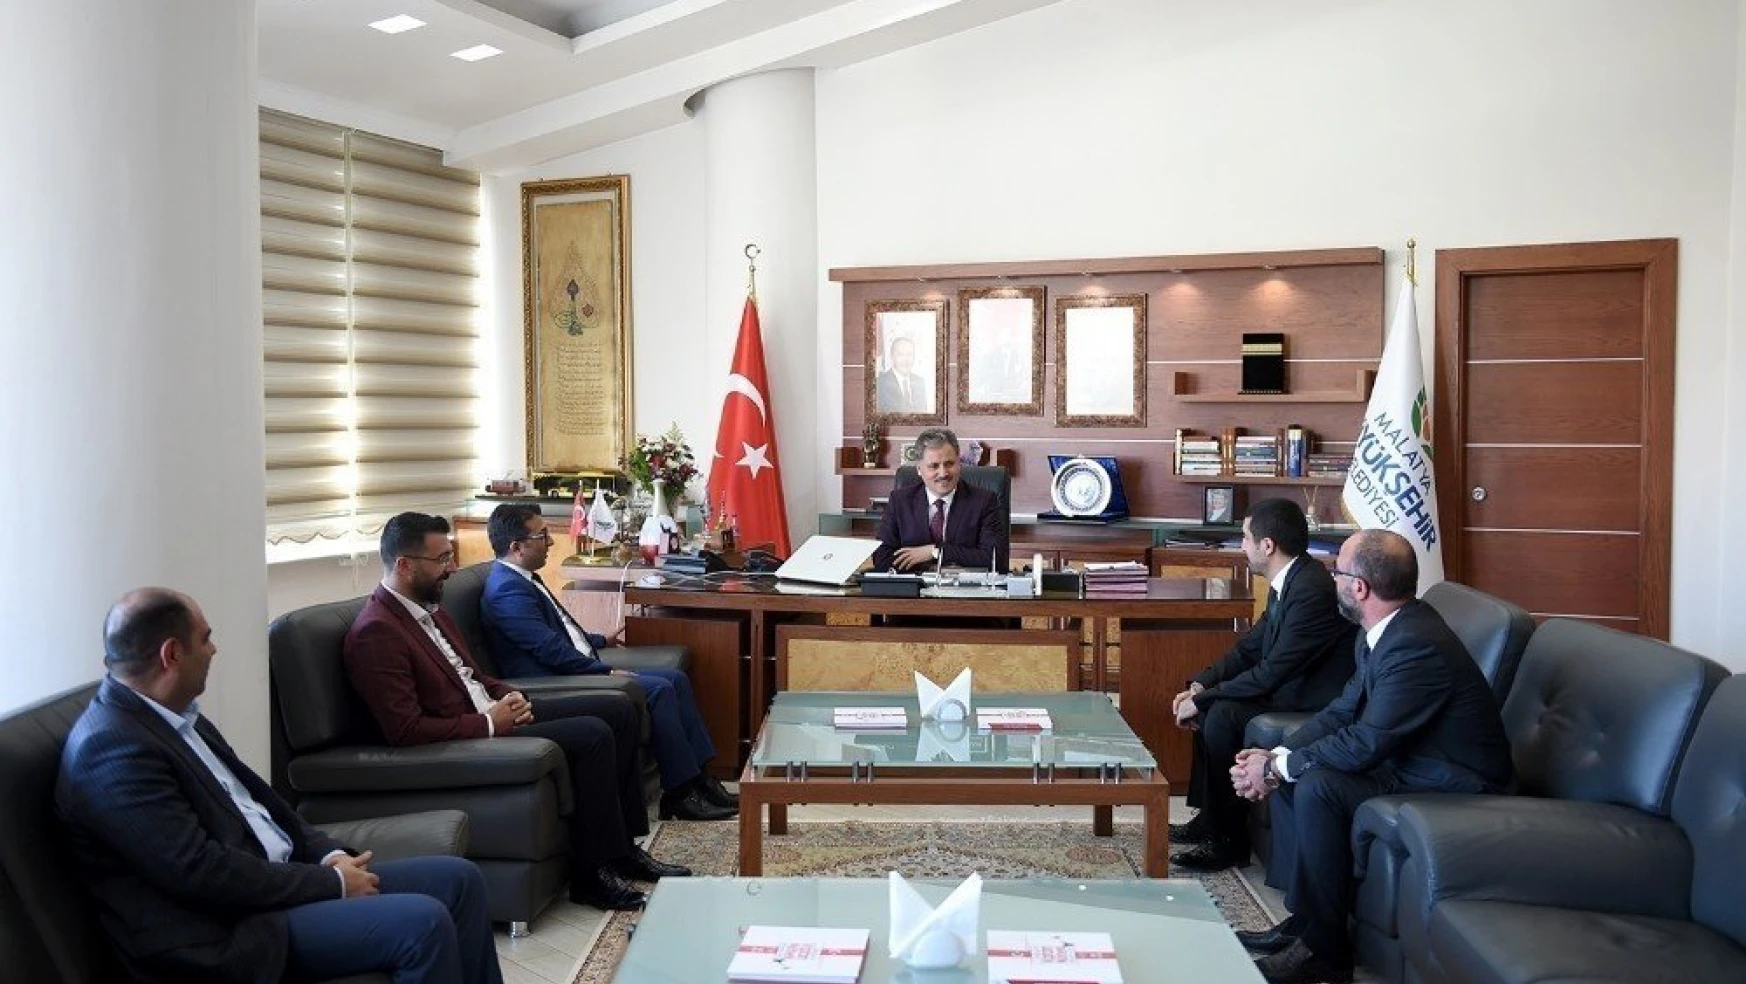 MHP il yönetiminden Başkan Çakır'a ziyaret
